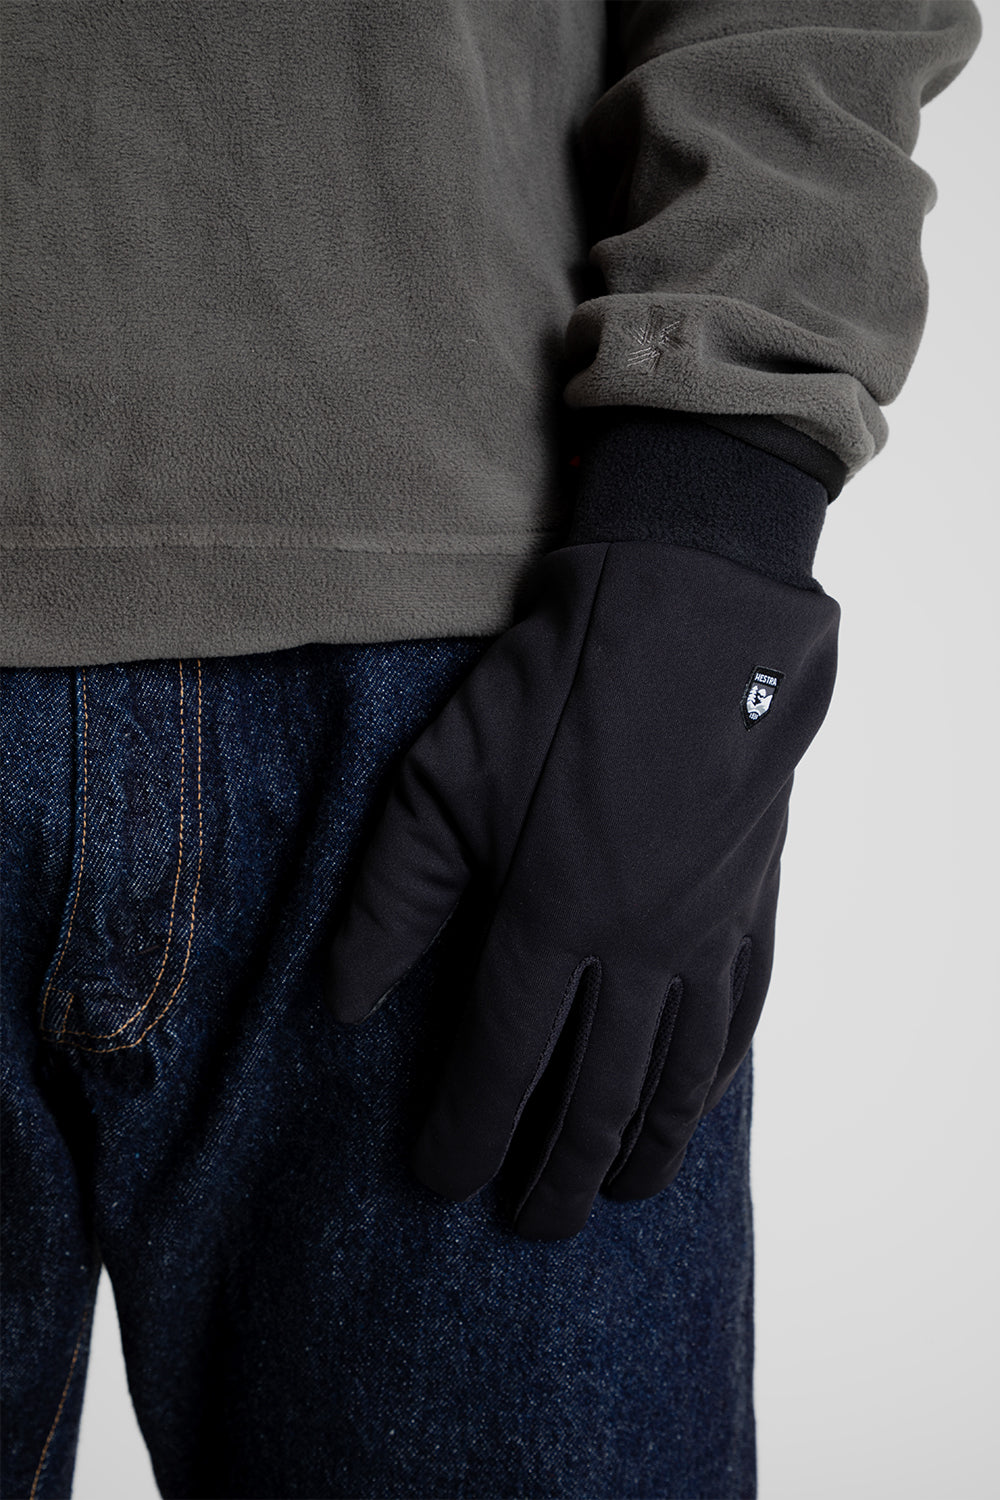 Hestra Gloves Windshield Liner in Black